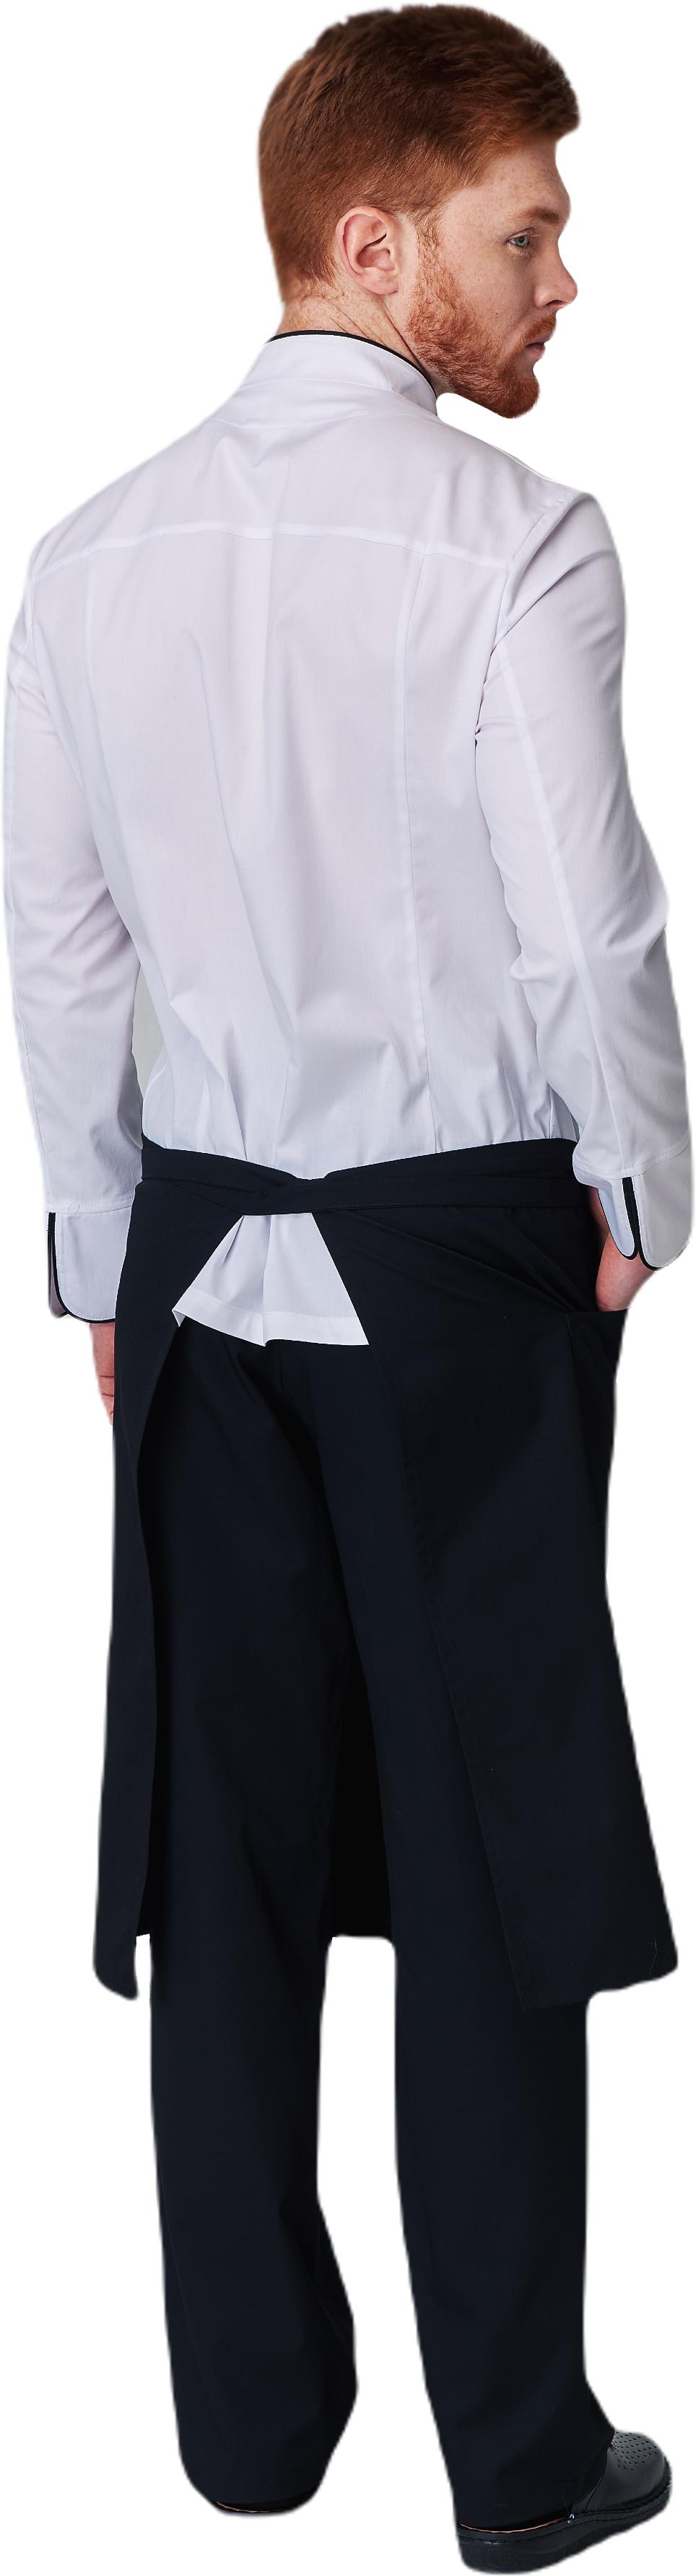 Комплект для повара SHEF - китель / фартук / брюки мужской белый 1